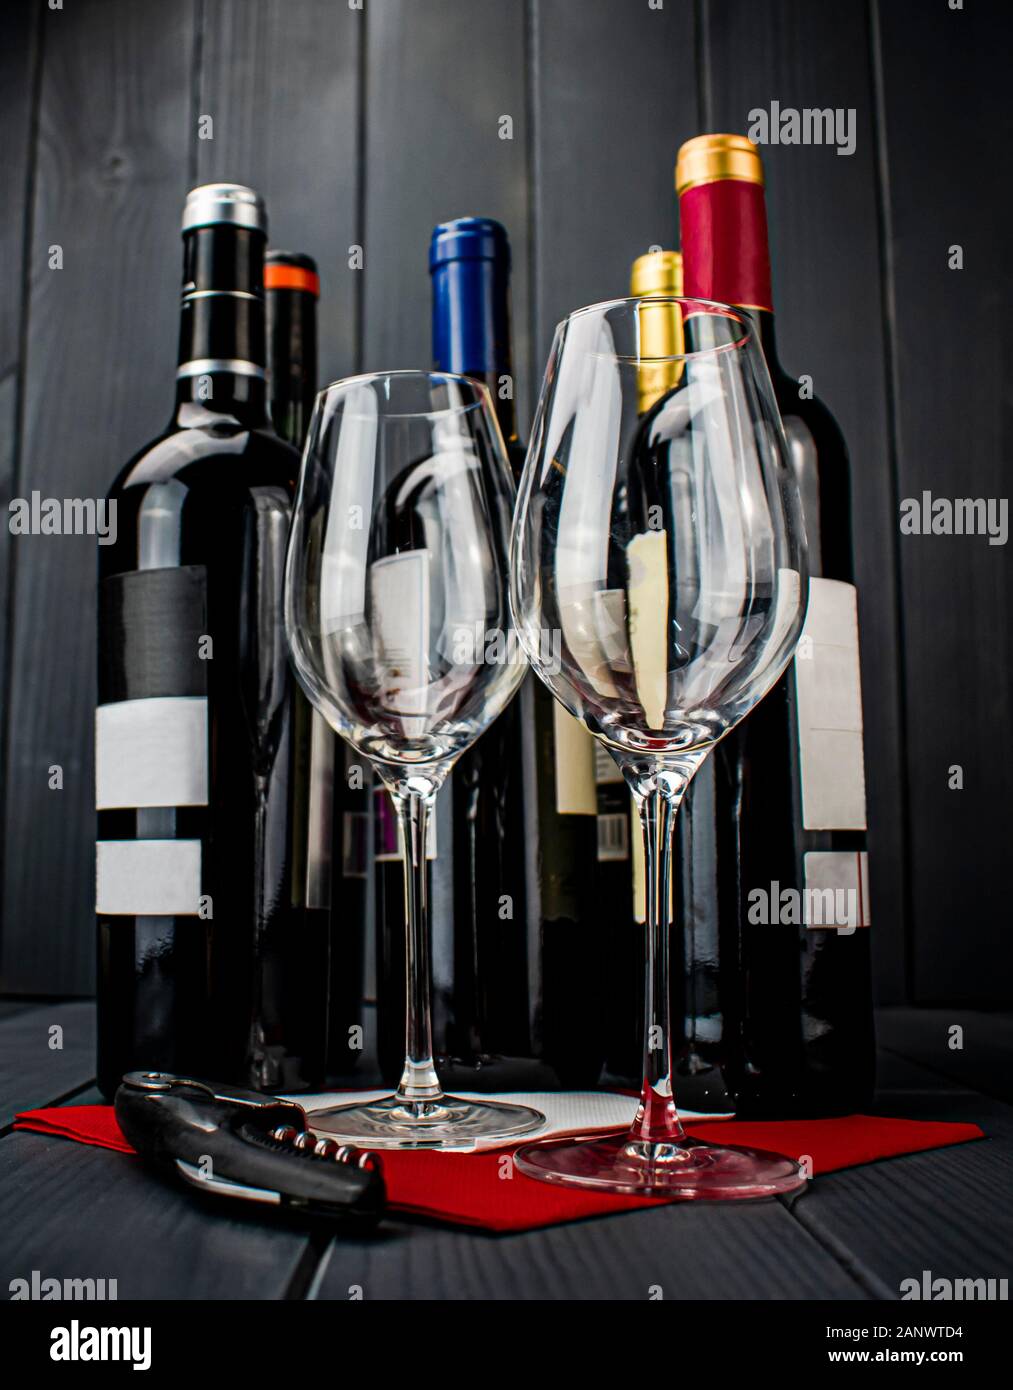 Glänzend Glas Tassen auf tief rot Tischdecke, Korkenzieher und vier Flaschen Rotwein liegen und ruht auf sich Entkorkt zu werden und schmeckte Stockfoto